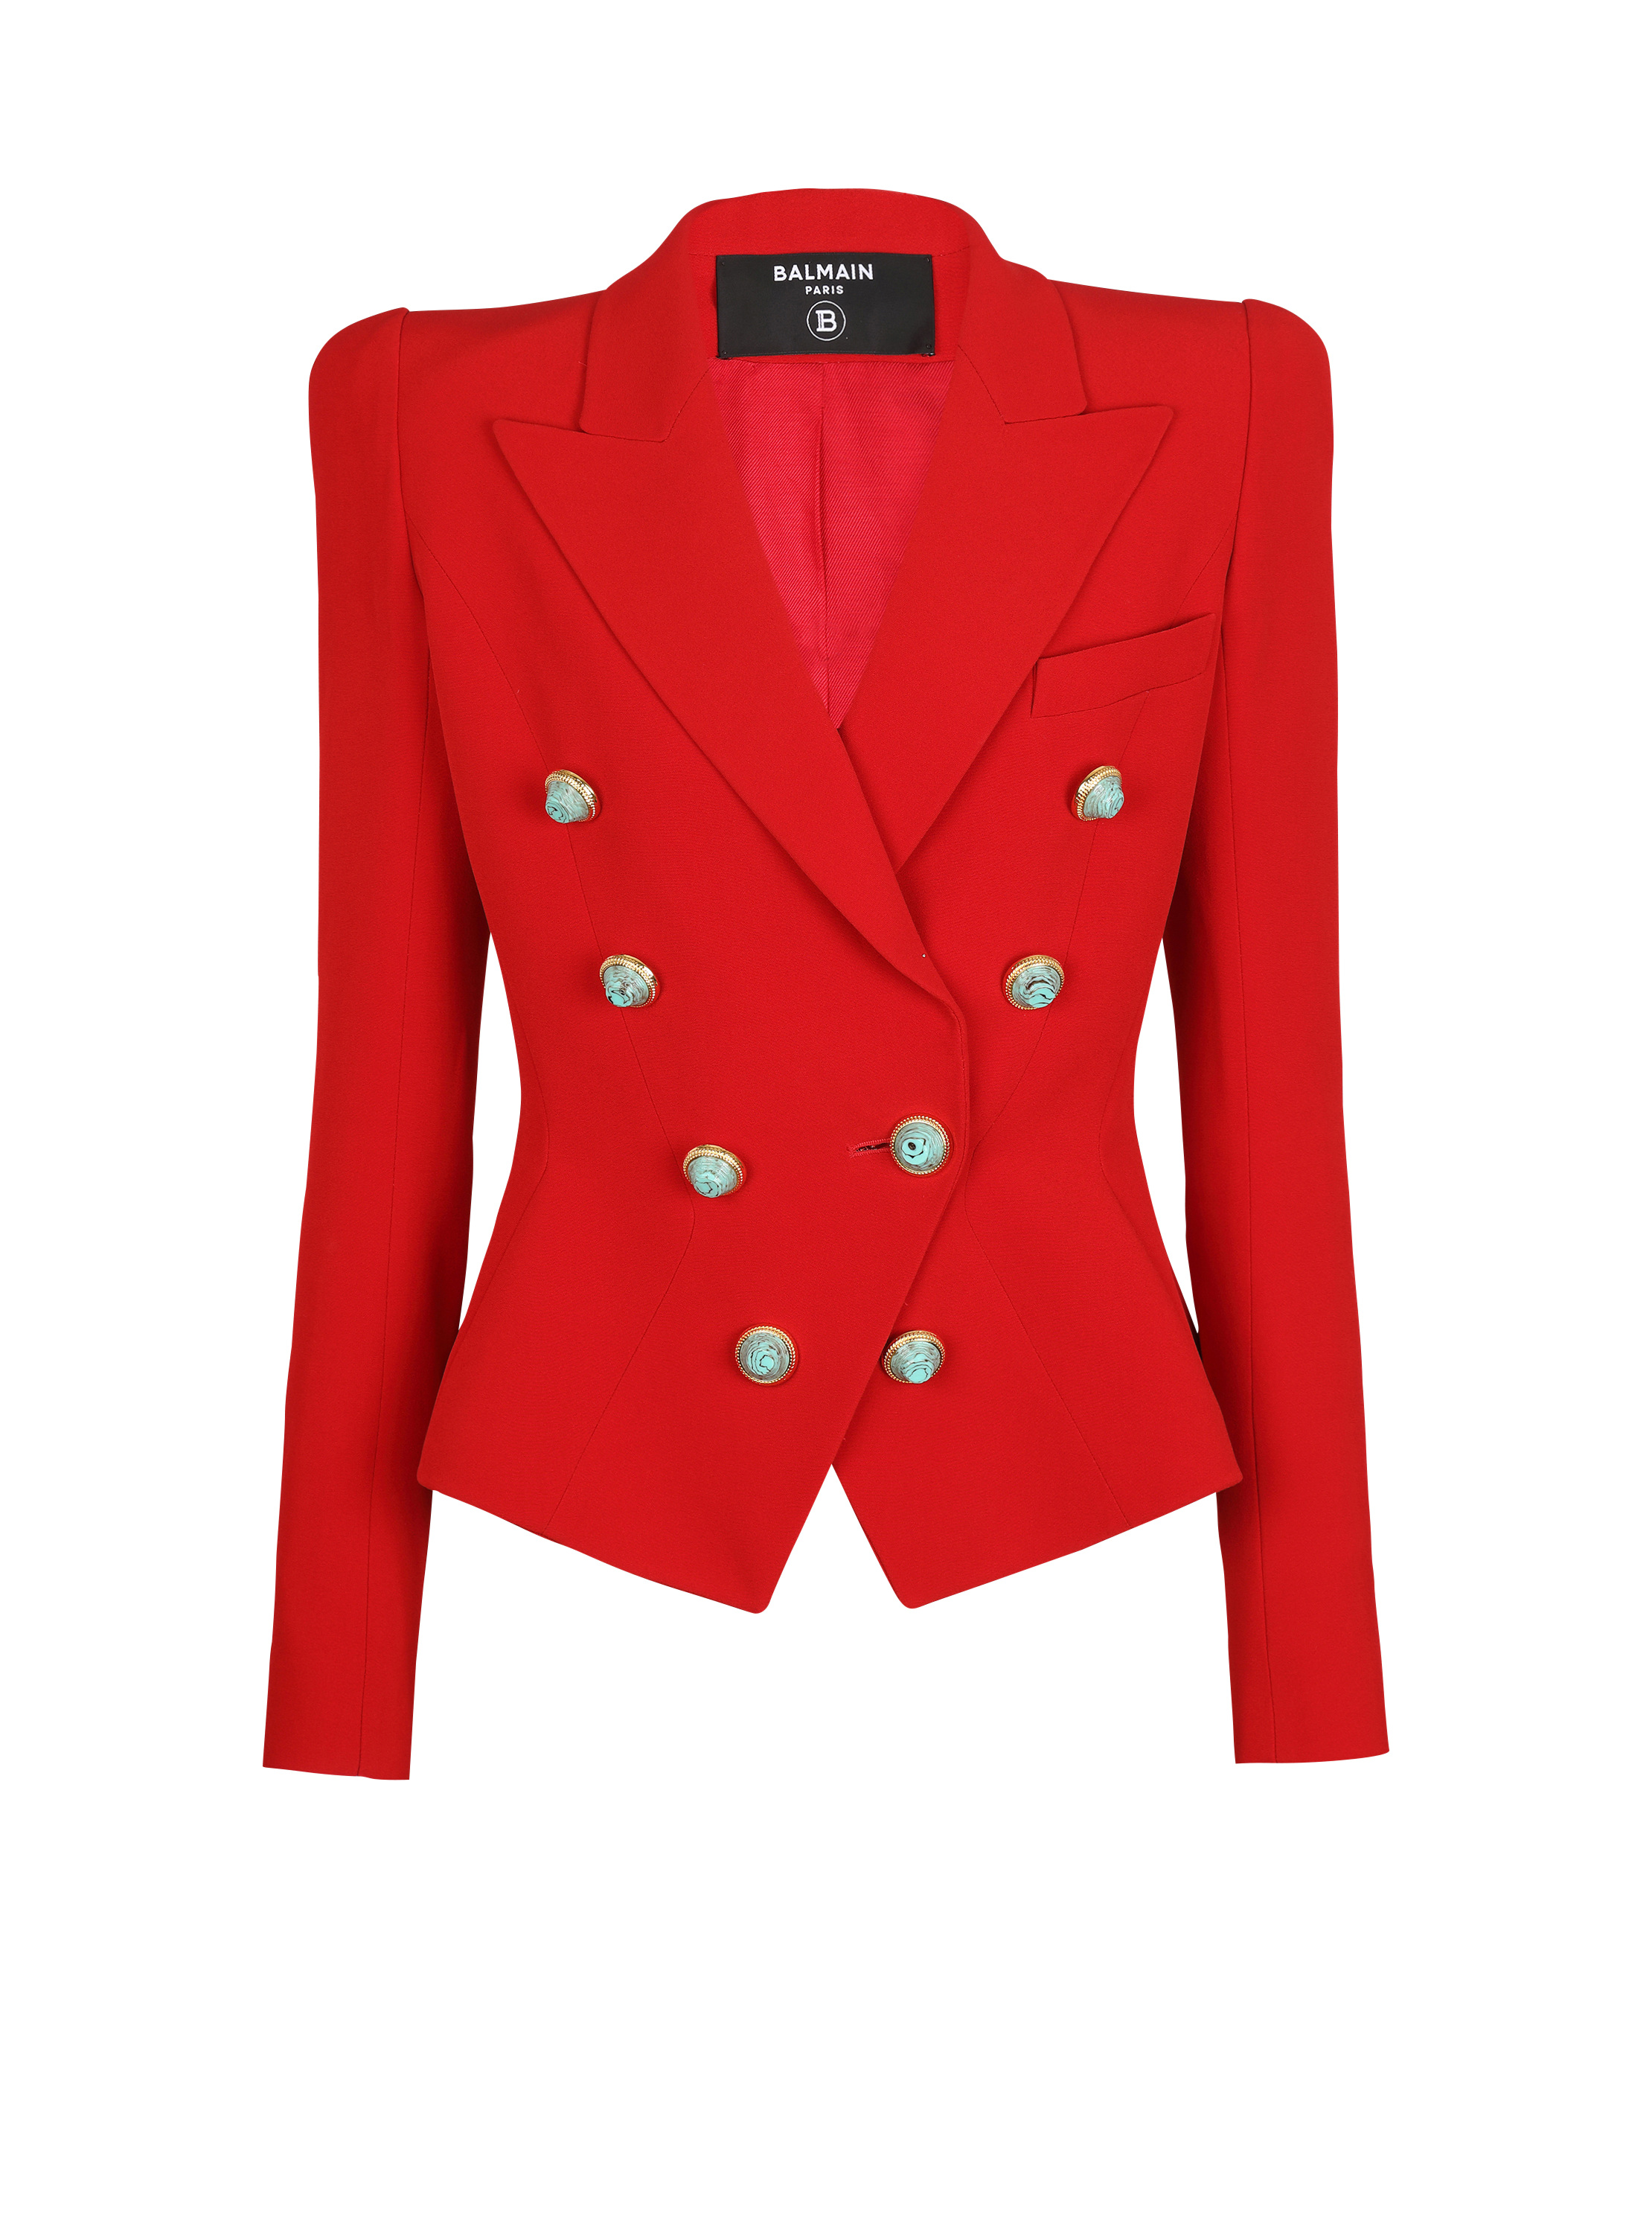 Slim-fit crepe jacket, red, hi-res